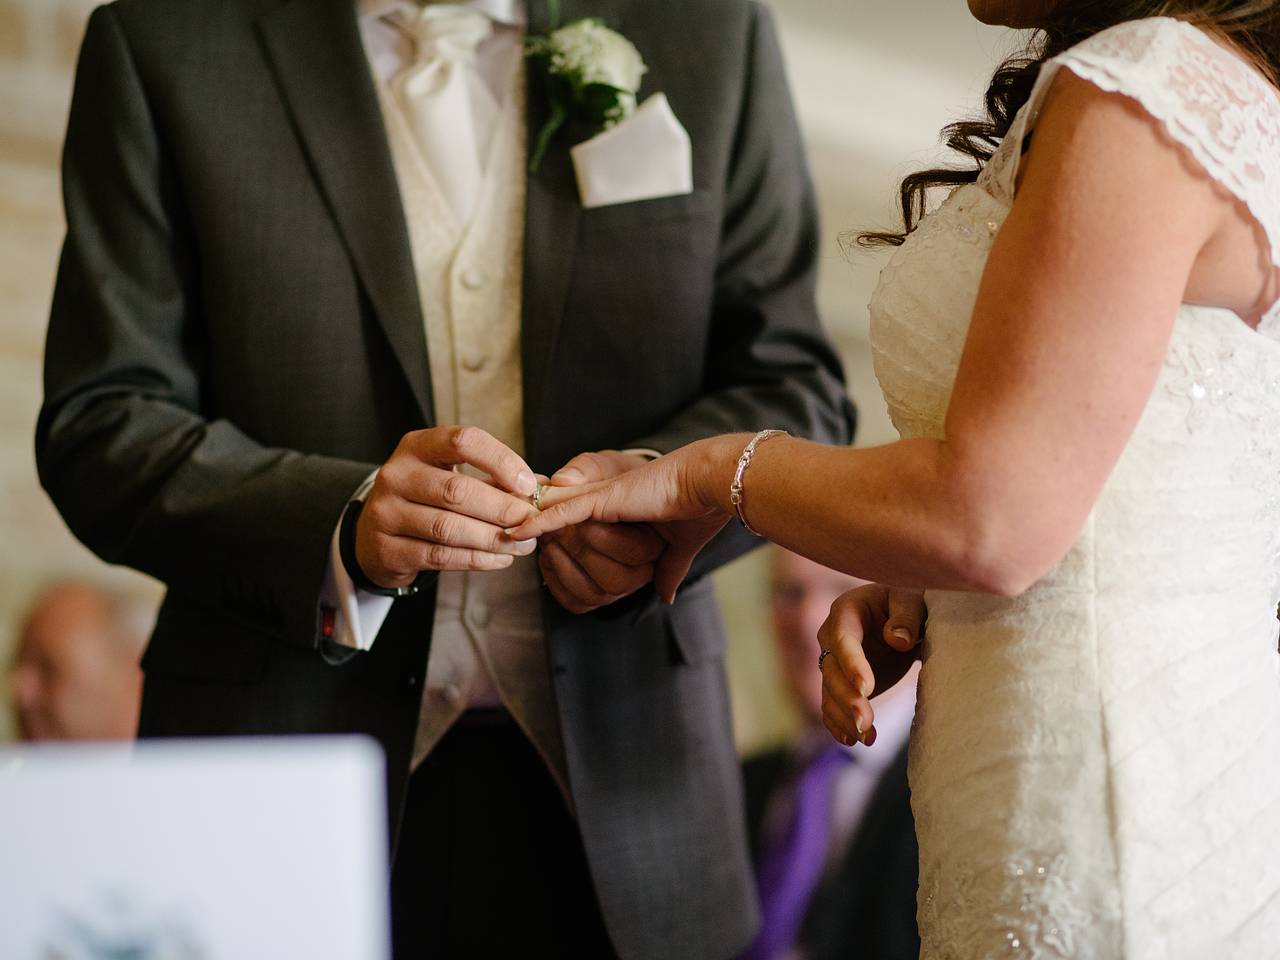 Свадебные поздравления от родителей невесты в стихах и в прозе